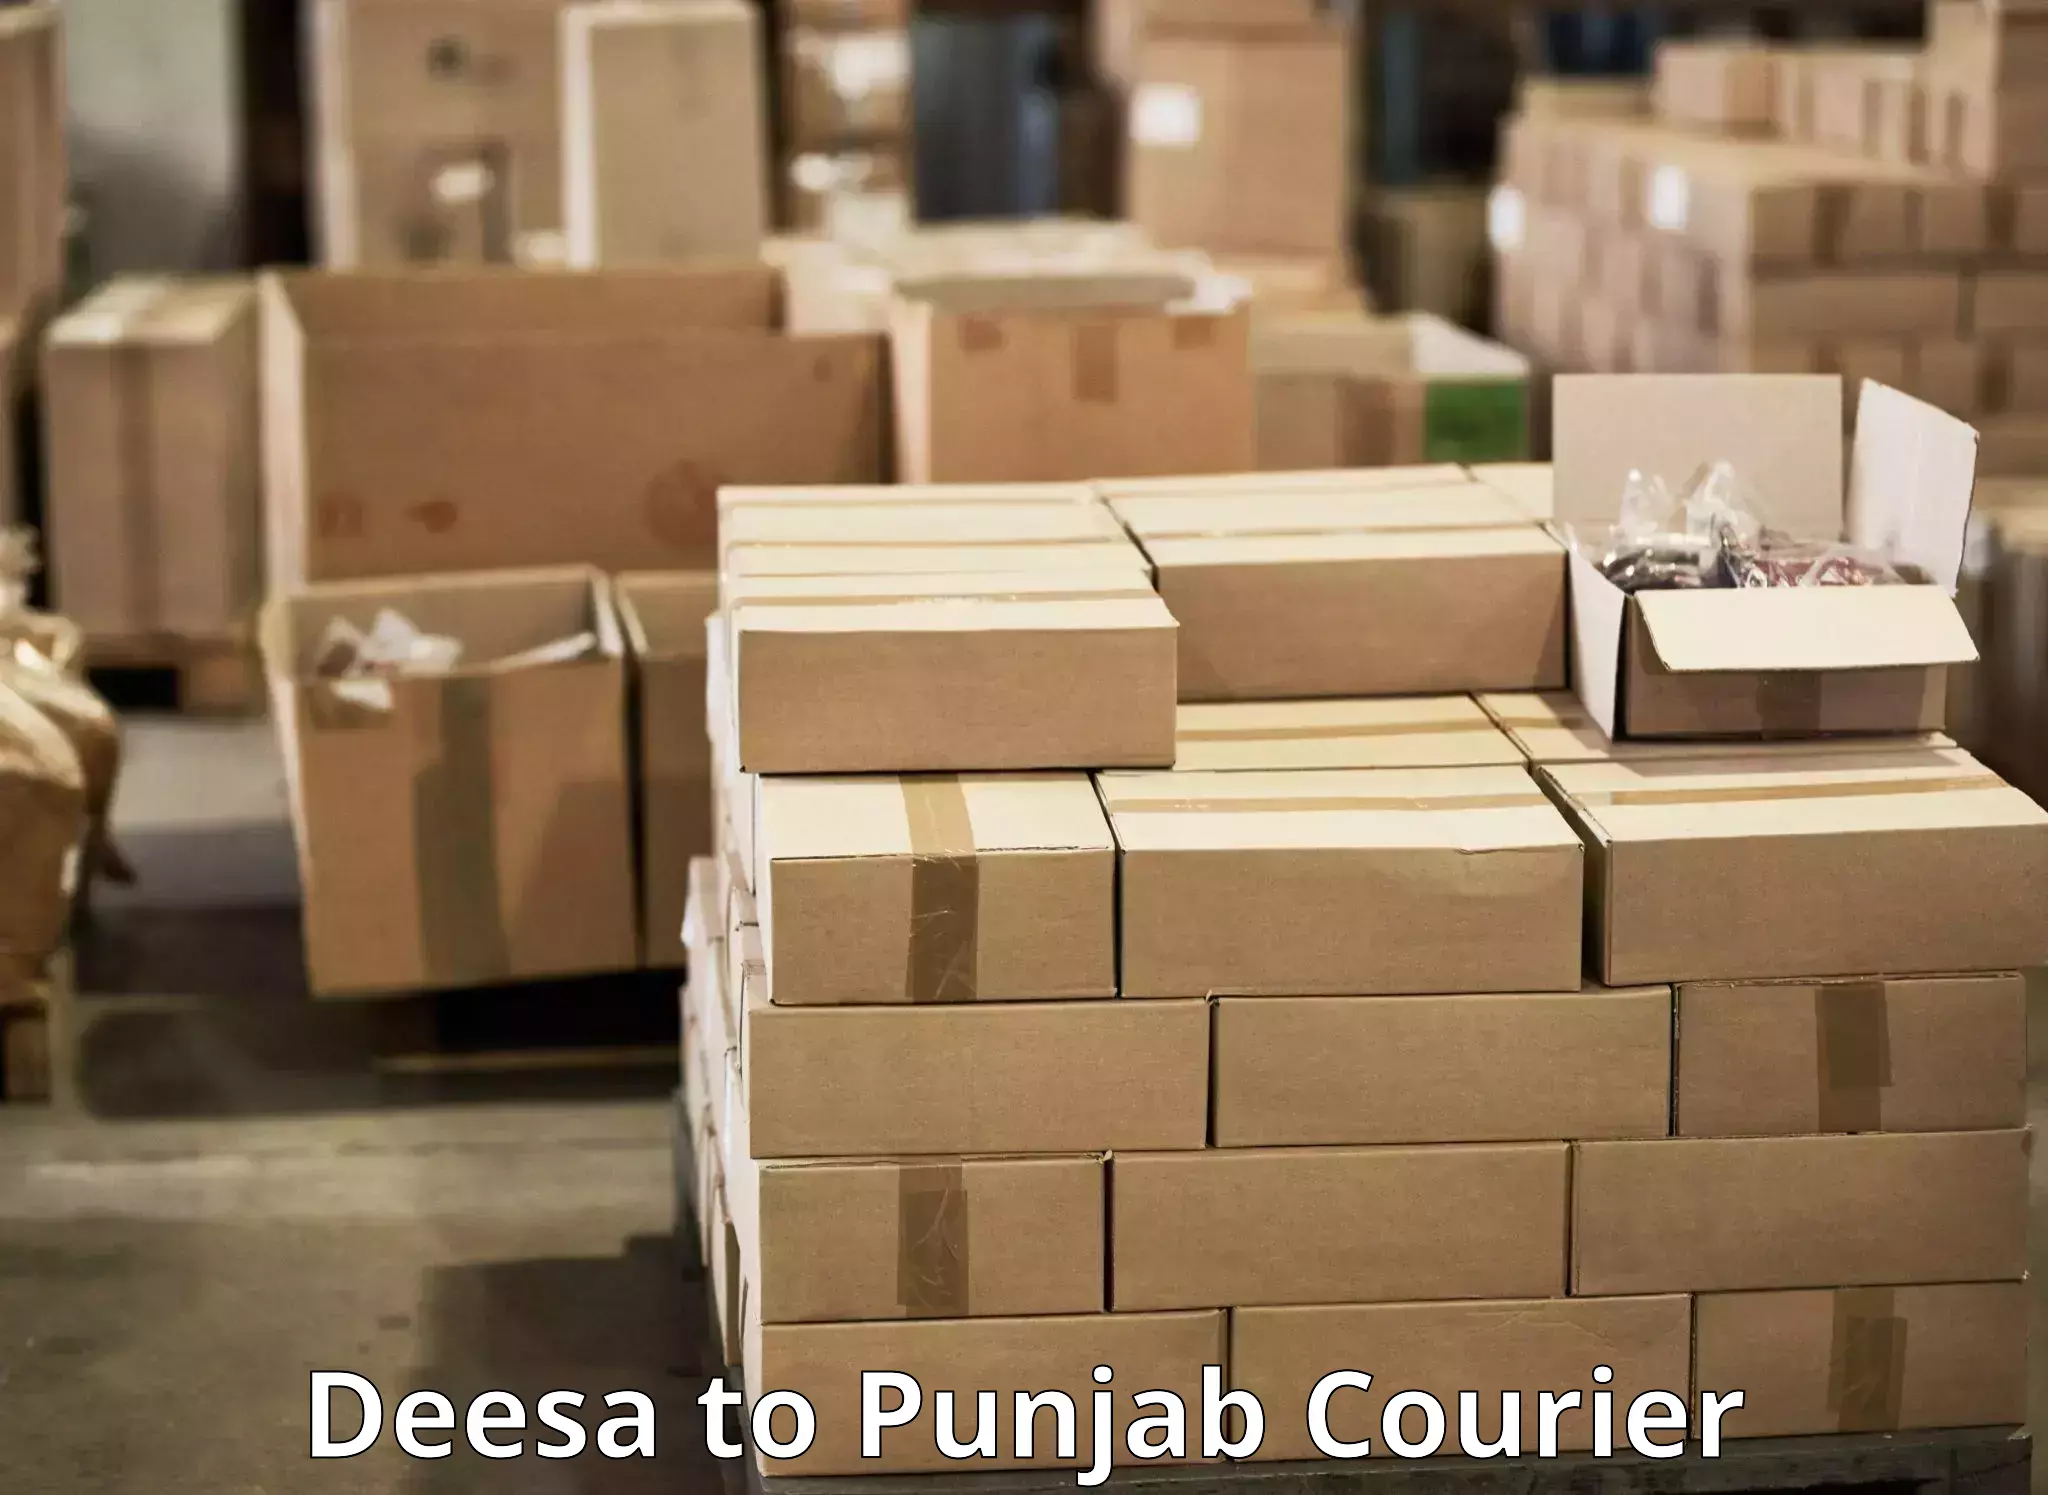 Global logistics network Deesa to Zirakpur